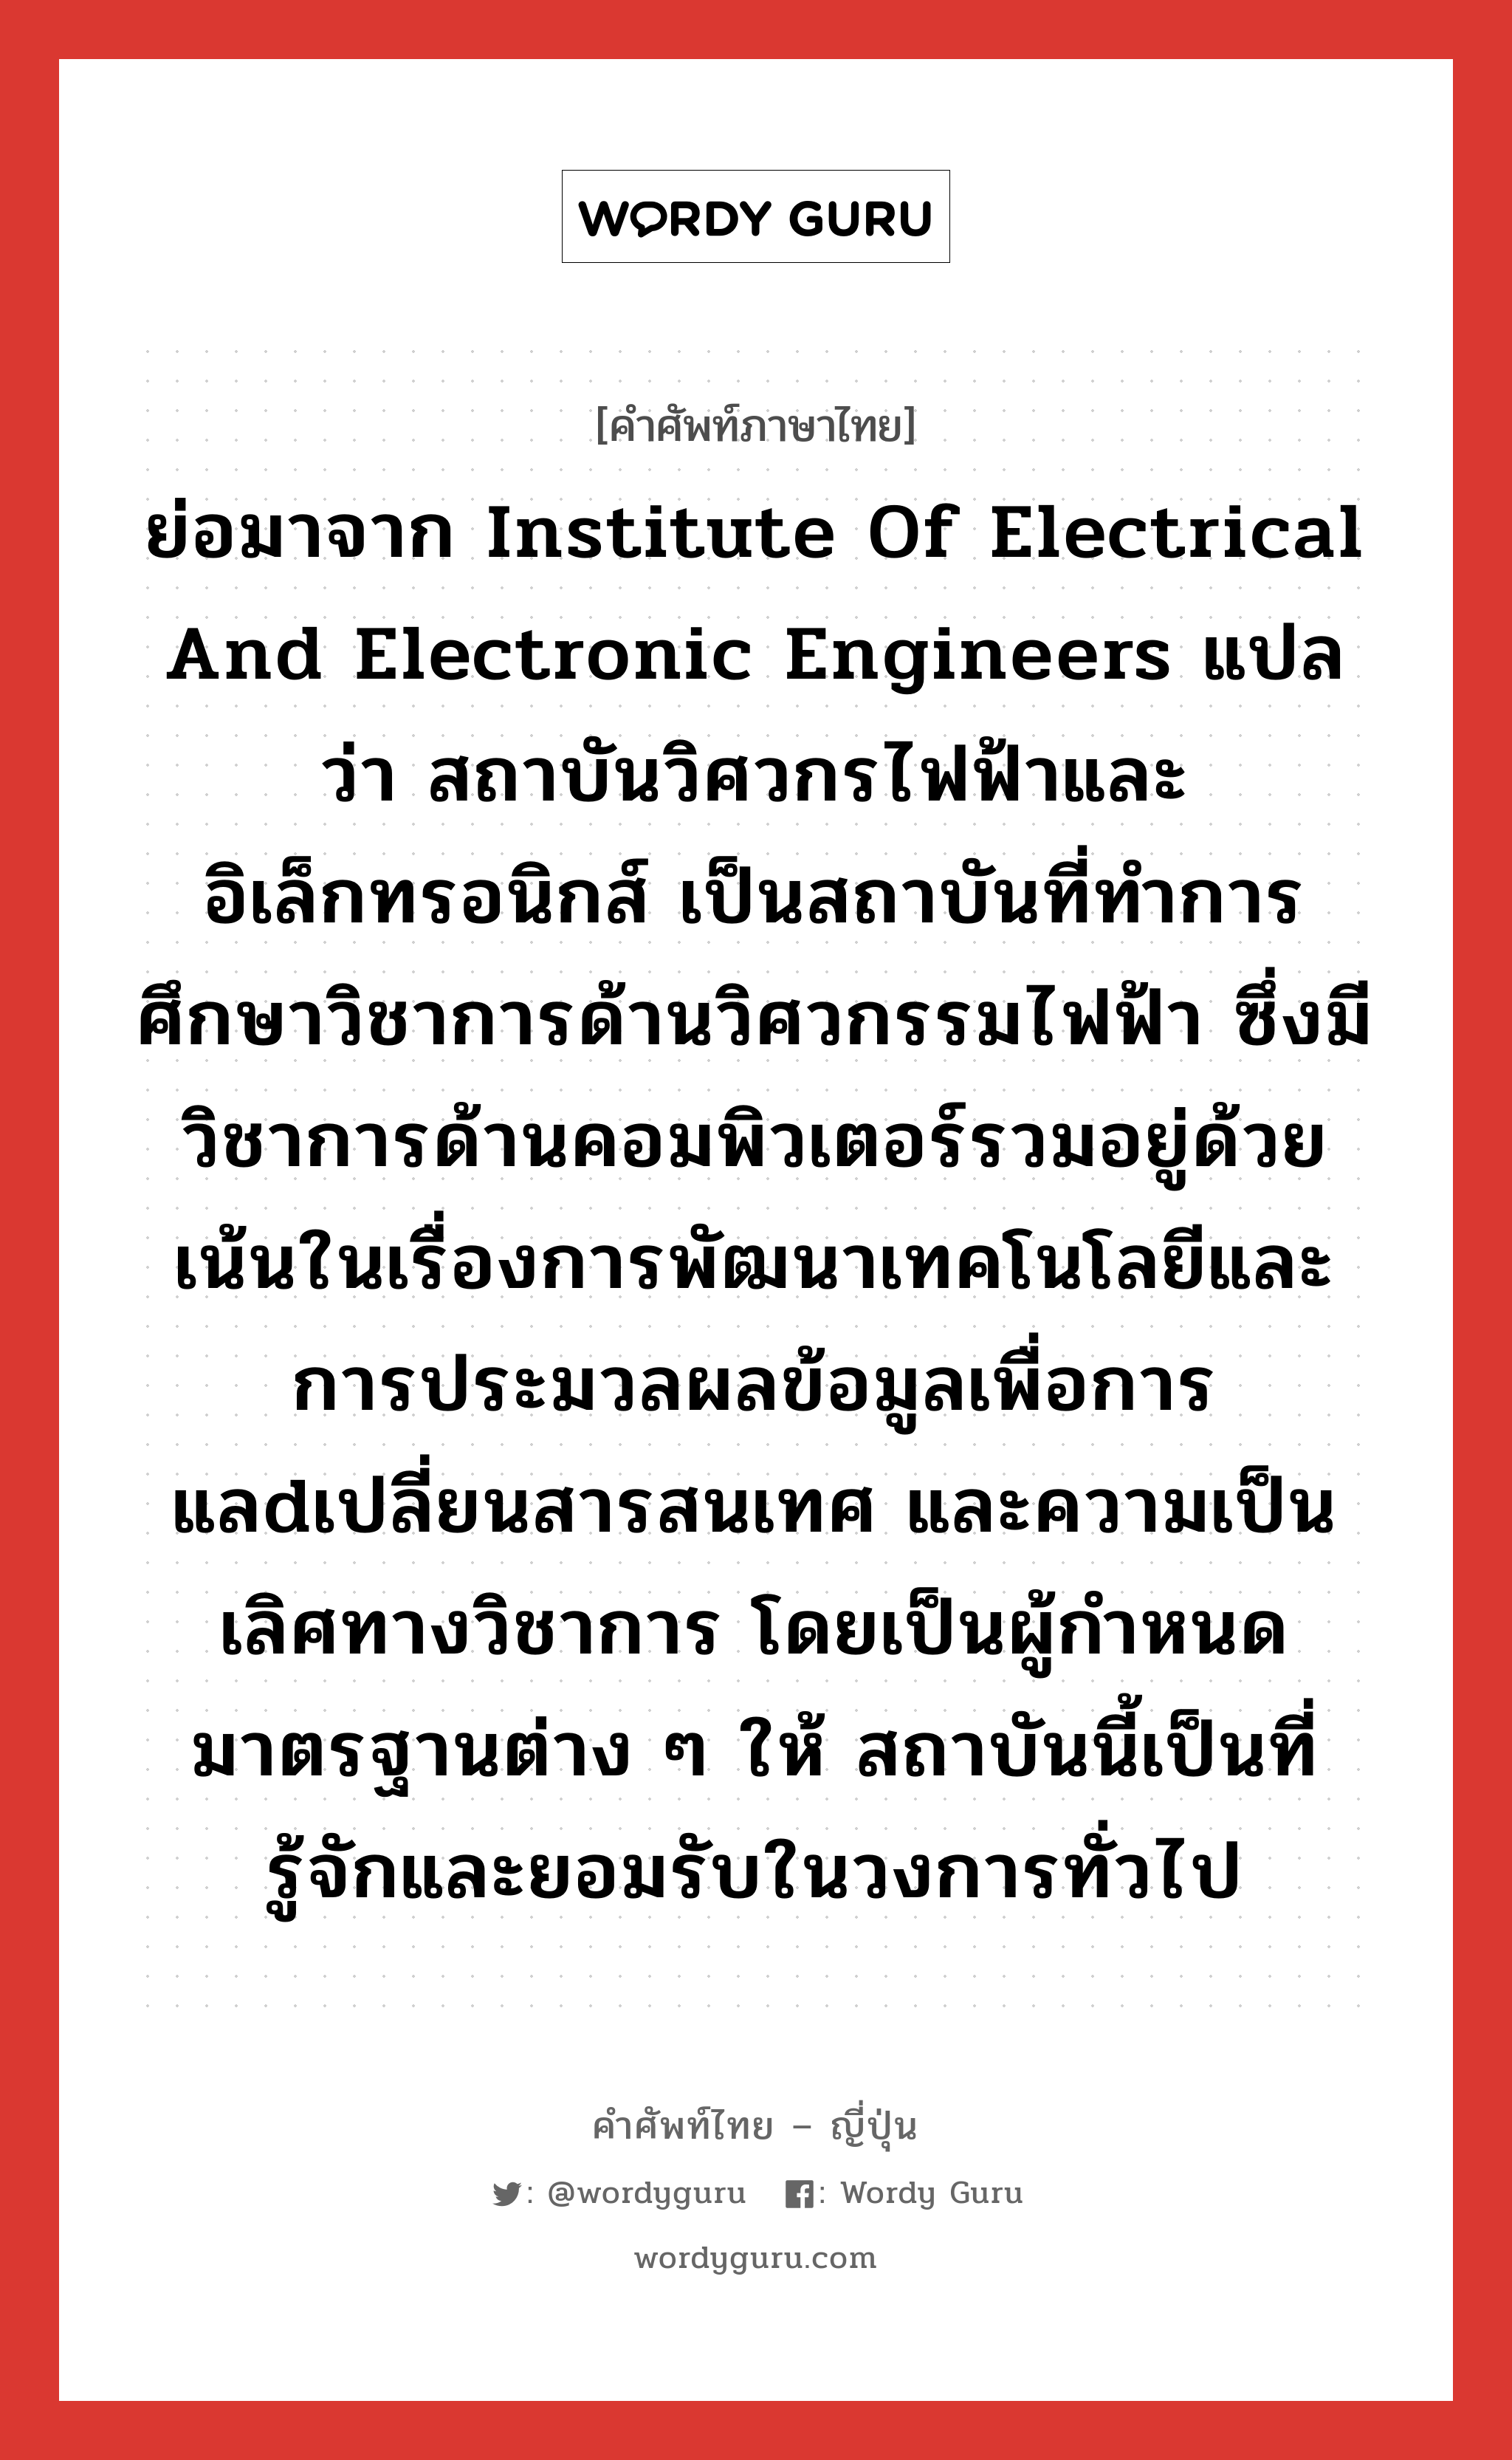 アイトリプルイー ภาษาไทย?, คำศัพท์ภาษาไทย - ญี่ปุ่น アイトリプルイー ภาษาญี่ปุ่น ย่อมาจาก Institute of Electrical and Electronic Engineers แปลว่า สถาบันวิศวกรไฟฟ้าและอิเล็กทรอนิกส์ เป็นสถาบันที่ทำการศึกษาวิชาการด้านวิศวกรรมไฟฟ้า ซึ่งมีวิชาการด้านคอมพิวเตอร์รวมอยู่ด้วย เน้นในเรื่องการพัฒนาเทคโนโลยีและการประมวลผลข้อมูลเพื่อการแลdเปลี่ยนสารสนเทศ และความเป็นเลิศทางวิชาการ โดยเป็นผู้กำหนดมาตรฐานต่าง ๆ ให้ สถาบันนี้เป็นที่รู้จักและยอมรับในวงการทั่วไป คำอ่านภาษาญี่ปุ่น アイトリプルイー หมวด n หมวด n